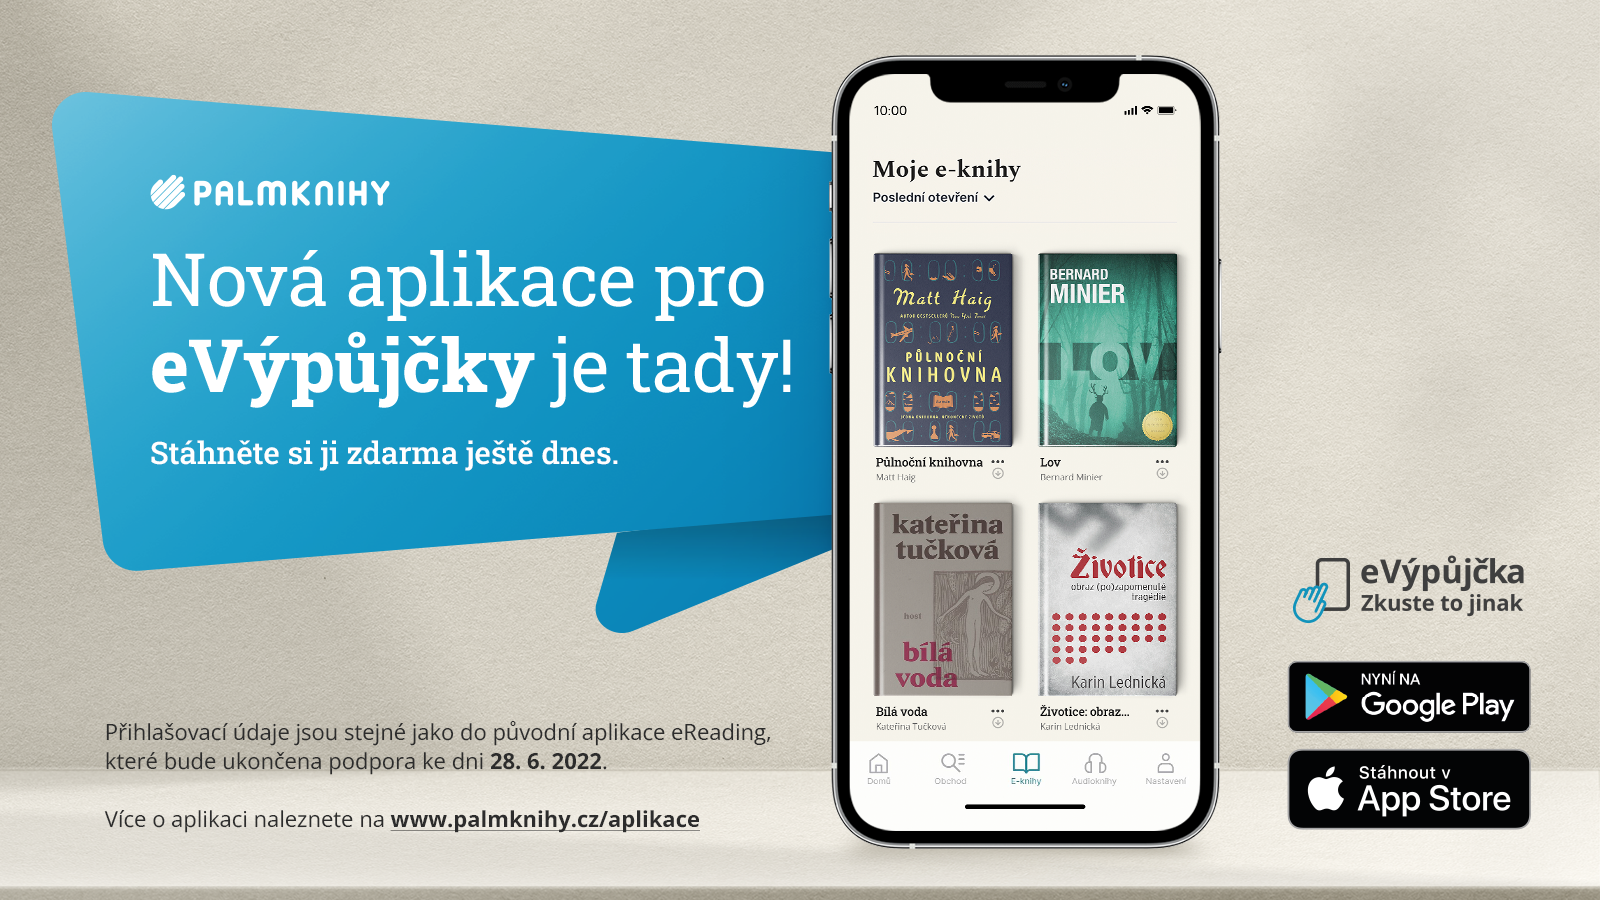 Leták k nové aplikaci Palmknihy.cz